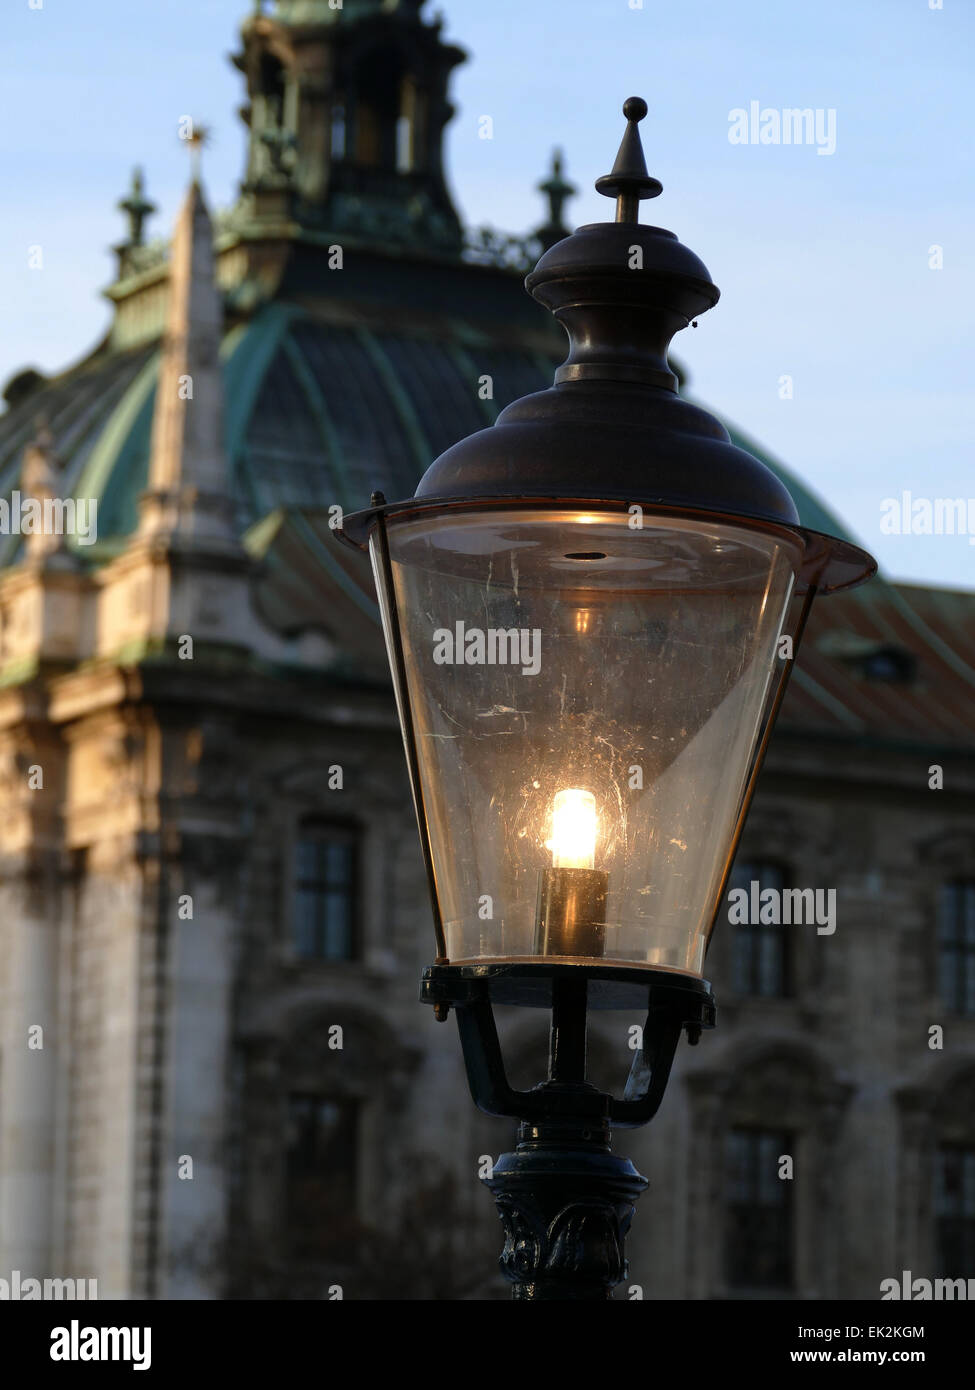 Alemania Munich nostálgico de la bombilla incandescente Foto de stock